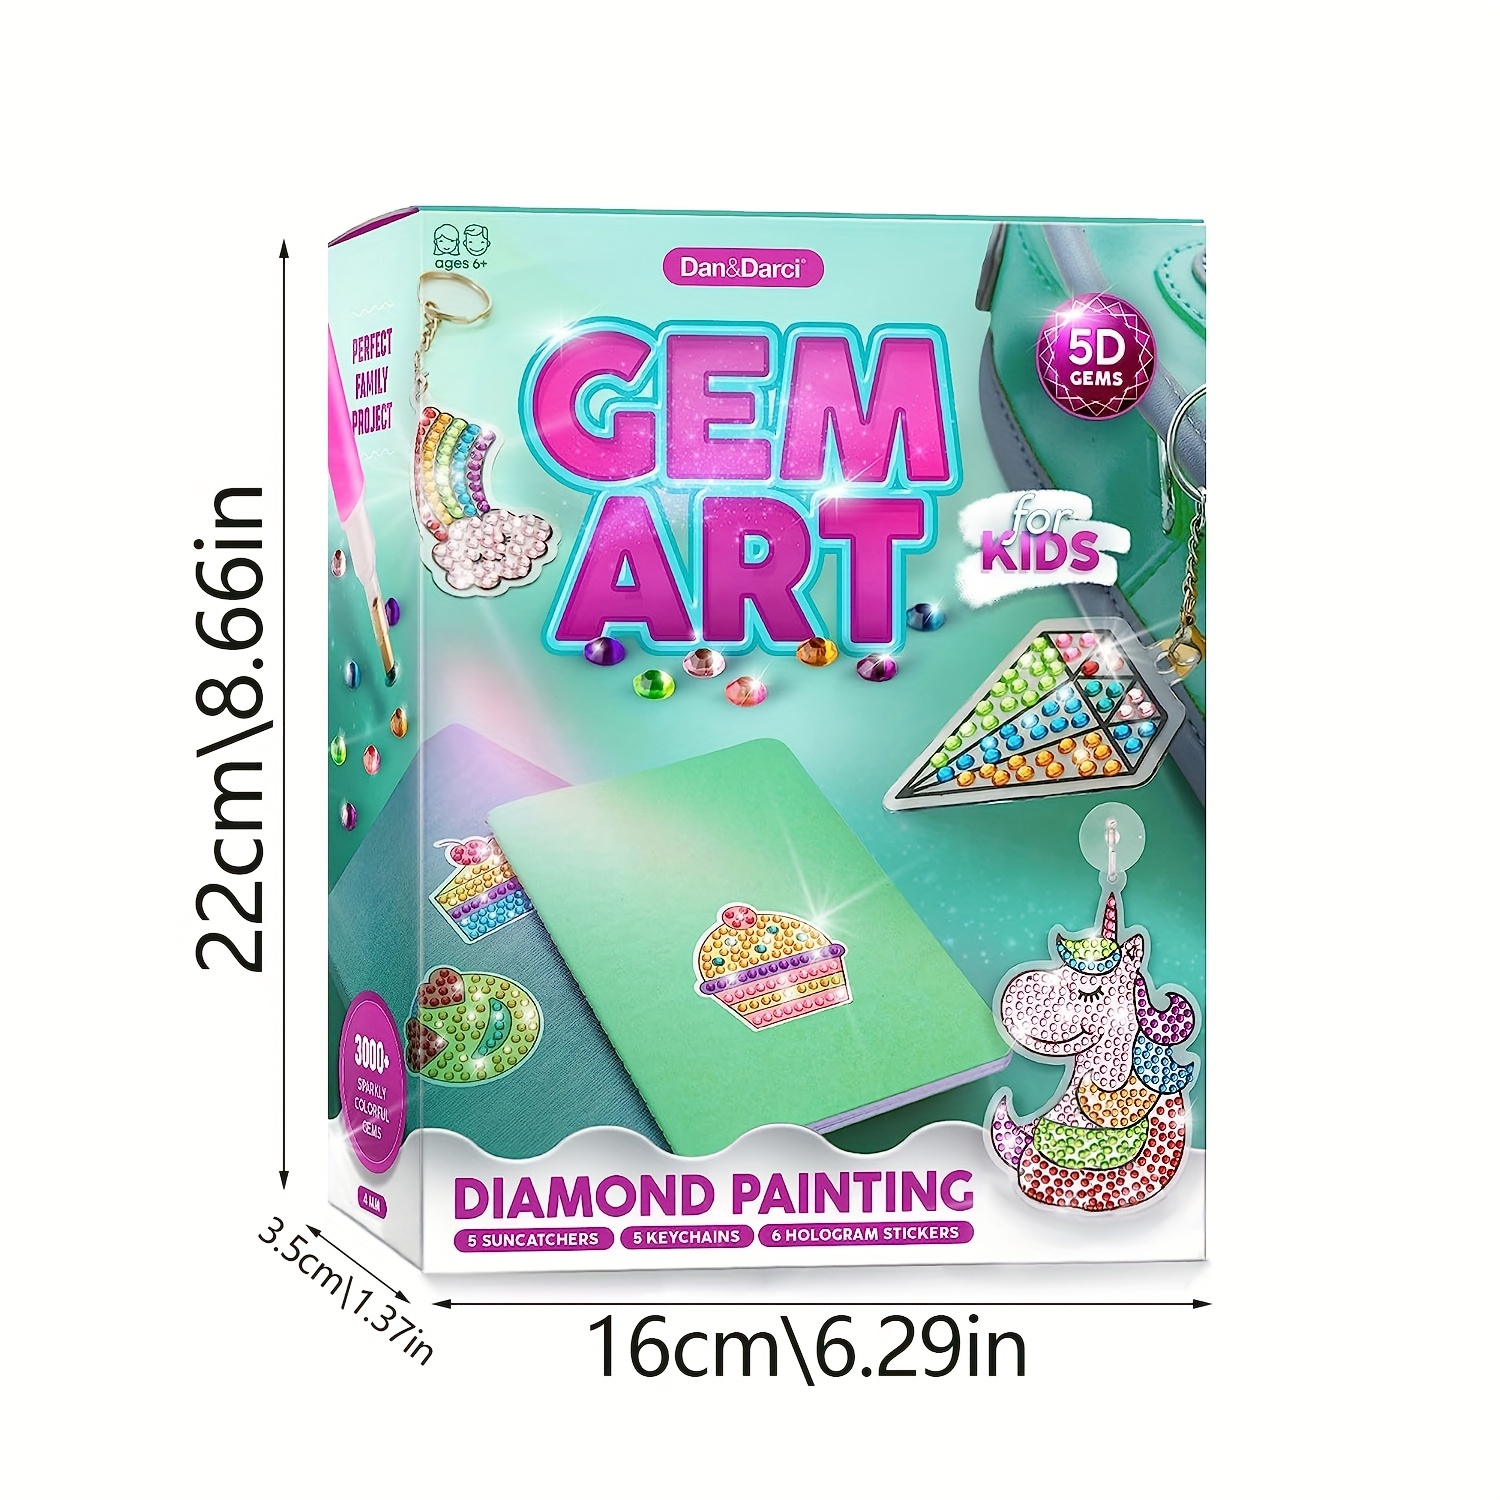 Gem Art, Kids Diamond Painting Kit - Big 5D Gems - Arts and Crafts